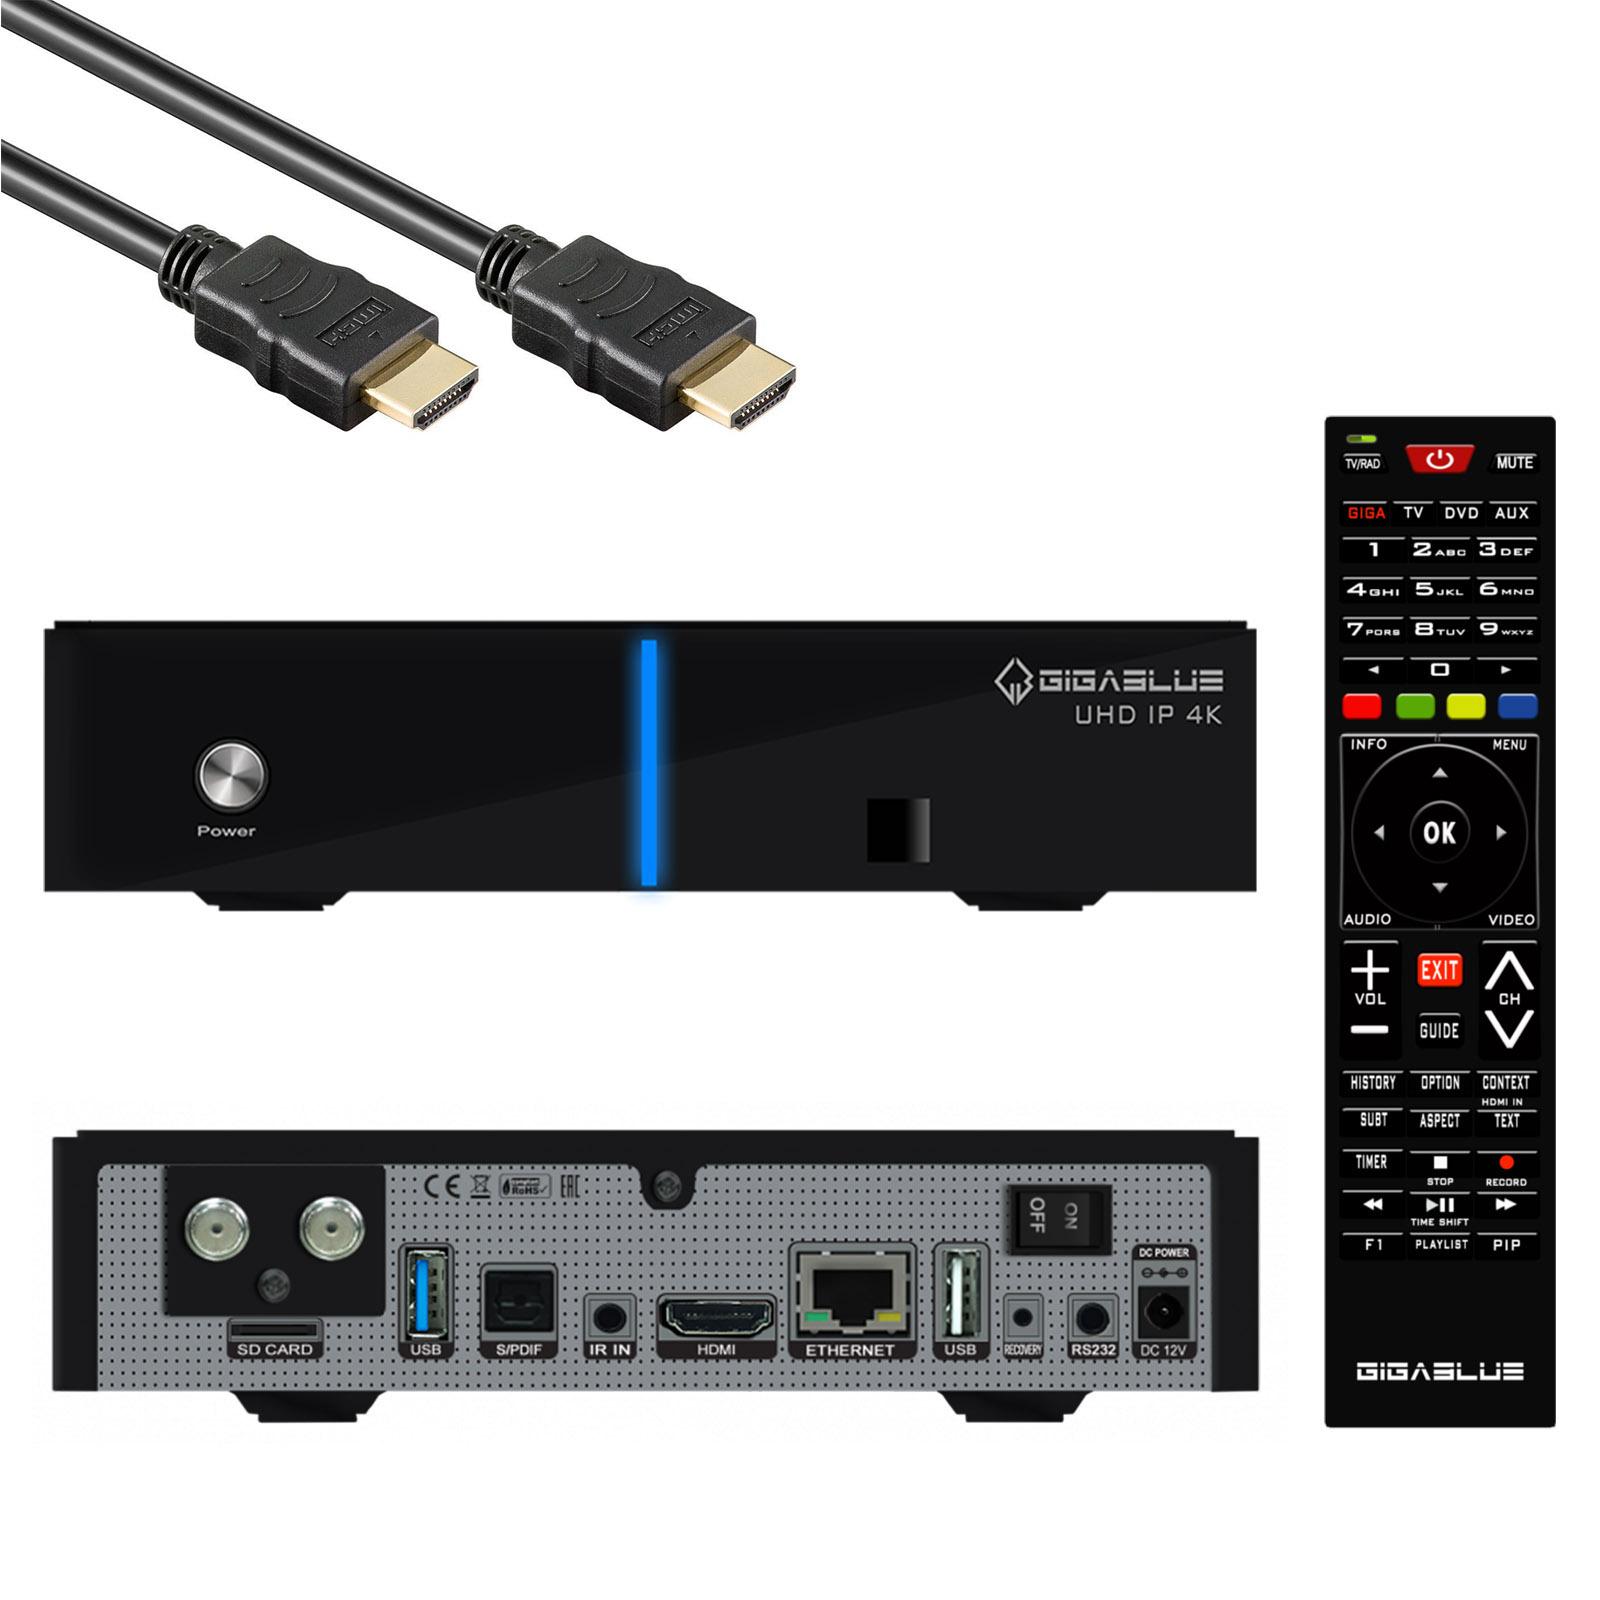 GigaBlue UHD IP 4K USB HDMI SD Card 1x DVB-S2X Récepteur Multiroom Single Tuner noir avec câble HDMI 